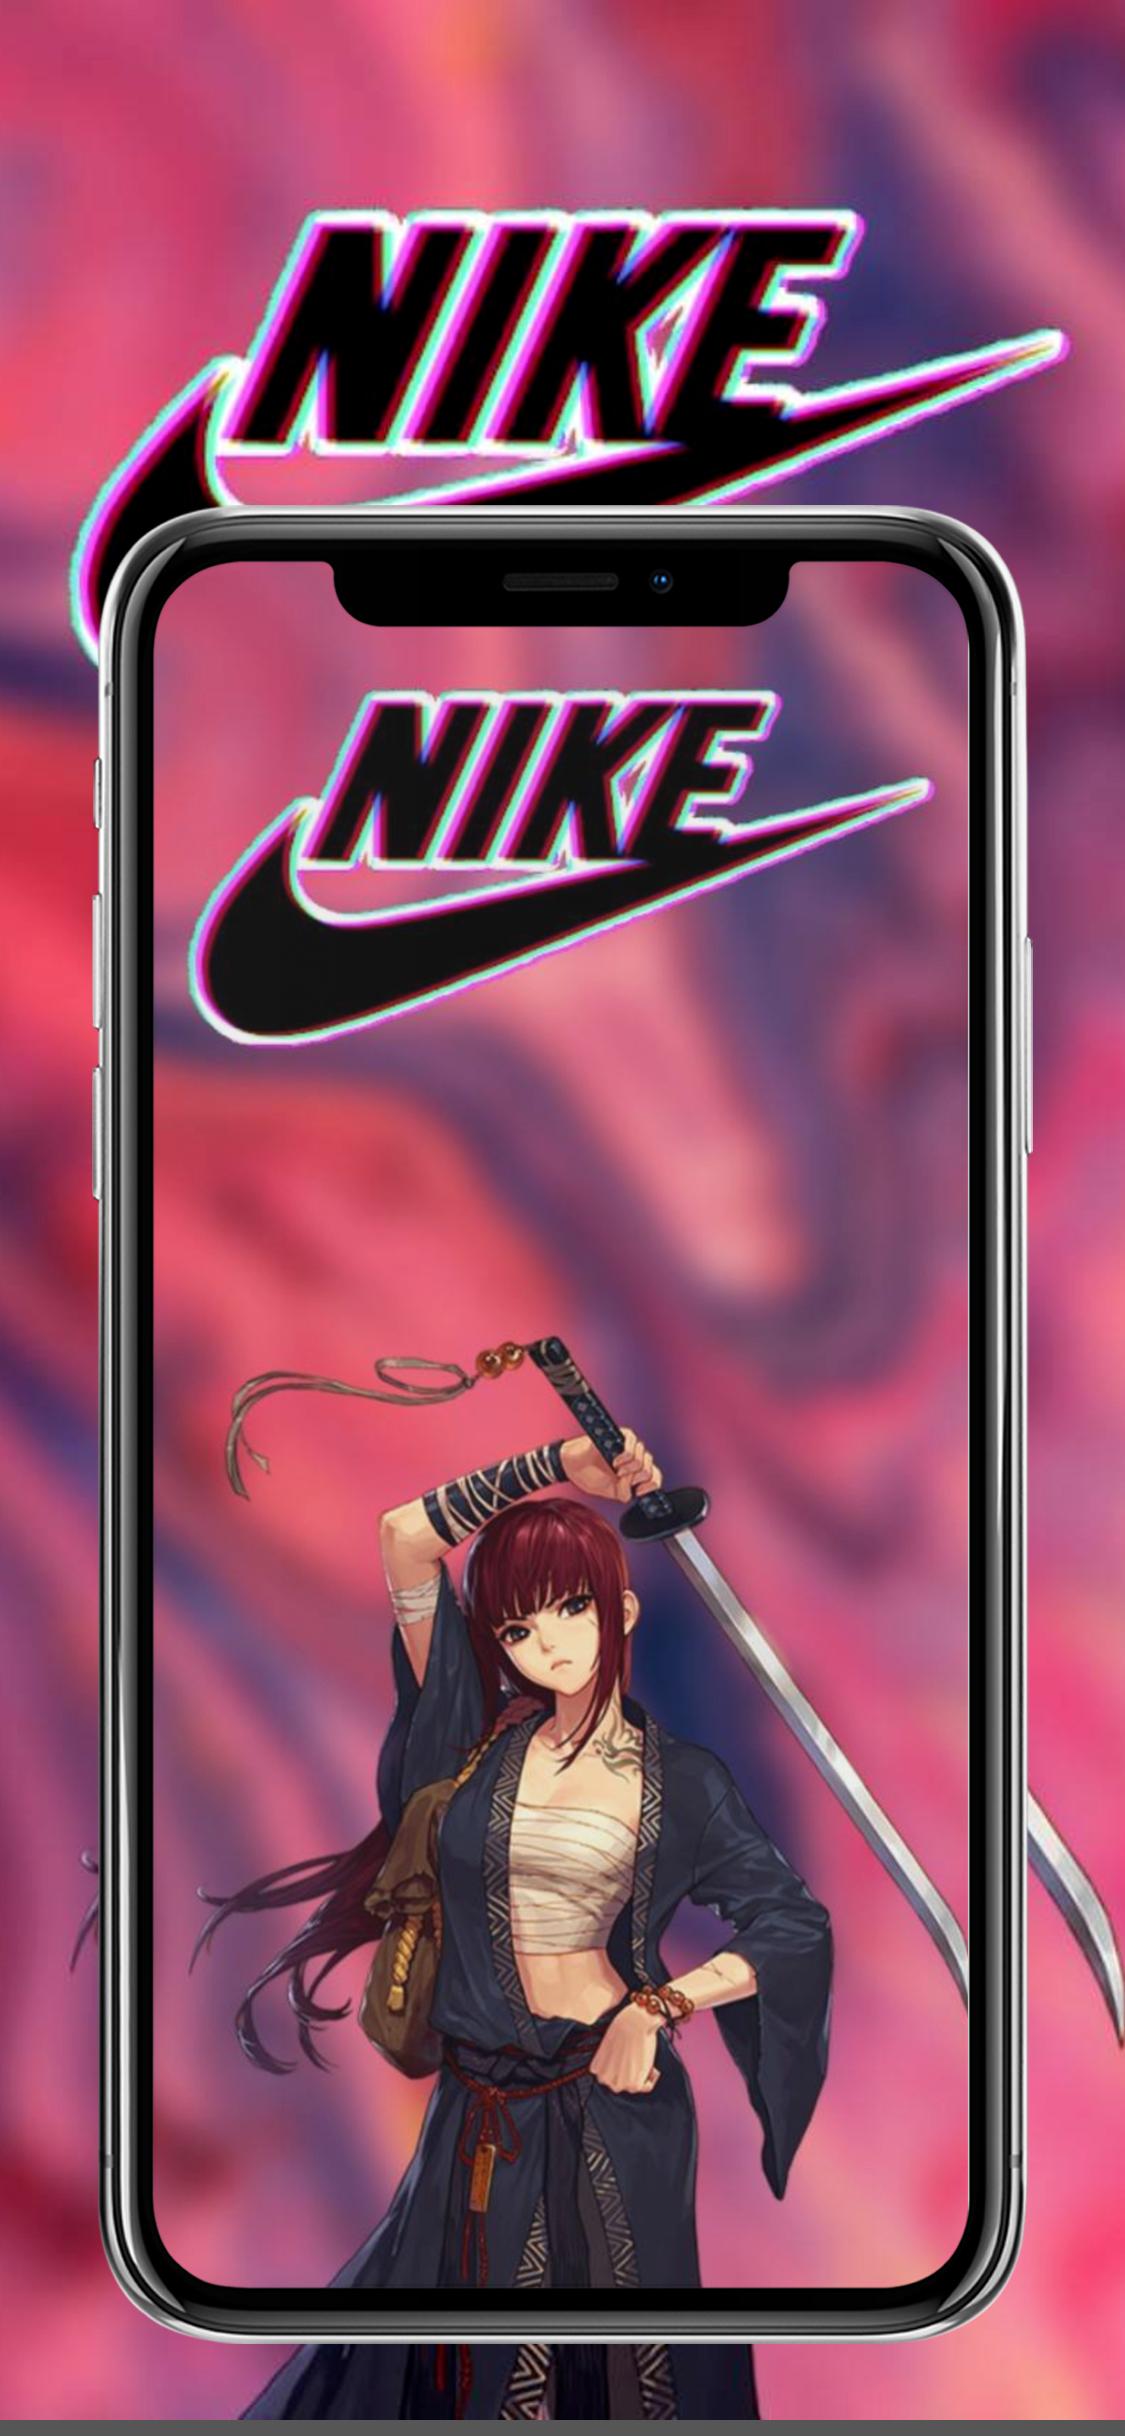 Hình nền Anime hồng 2022 cho Android: Bạn đang tìm kiếm một hình nền anime với gam màu hồng ấm áp cho điện thoại của mình? Hãy tải ngay bộ sưu tập hình nền anime hồng 2022 dành cho Android của chúng tôi! Với thiết kế tươi sáng, đầy tính nghệ thuật và màu hồng chủ đạo, bạn sẽ có được một trải nghiệm thật tuyệt vời khi sử dụng điện thoại.